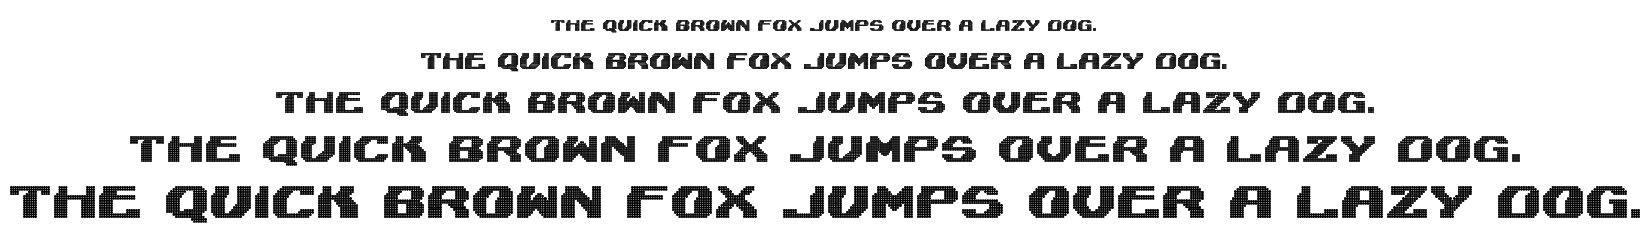 Lightman font